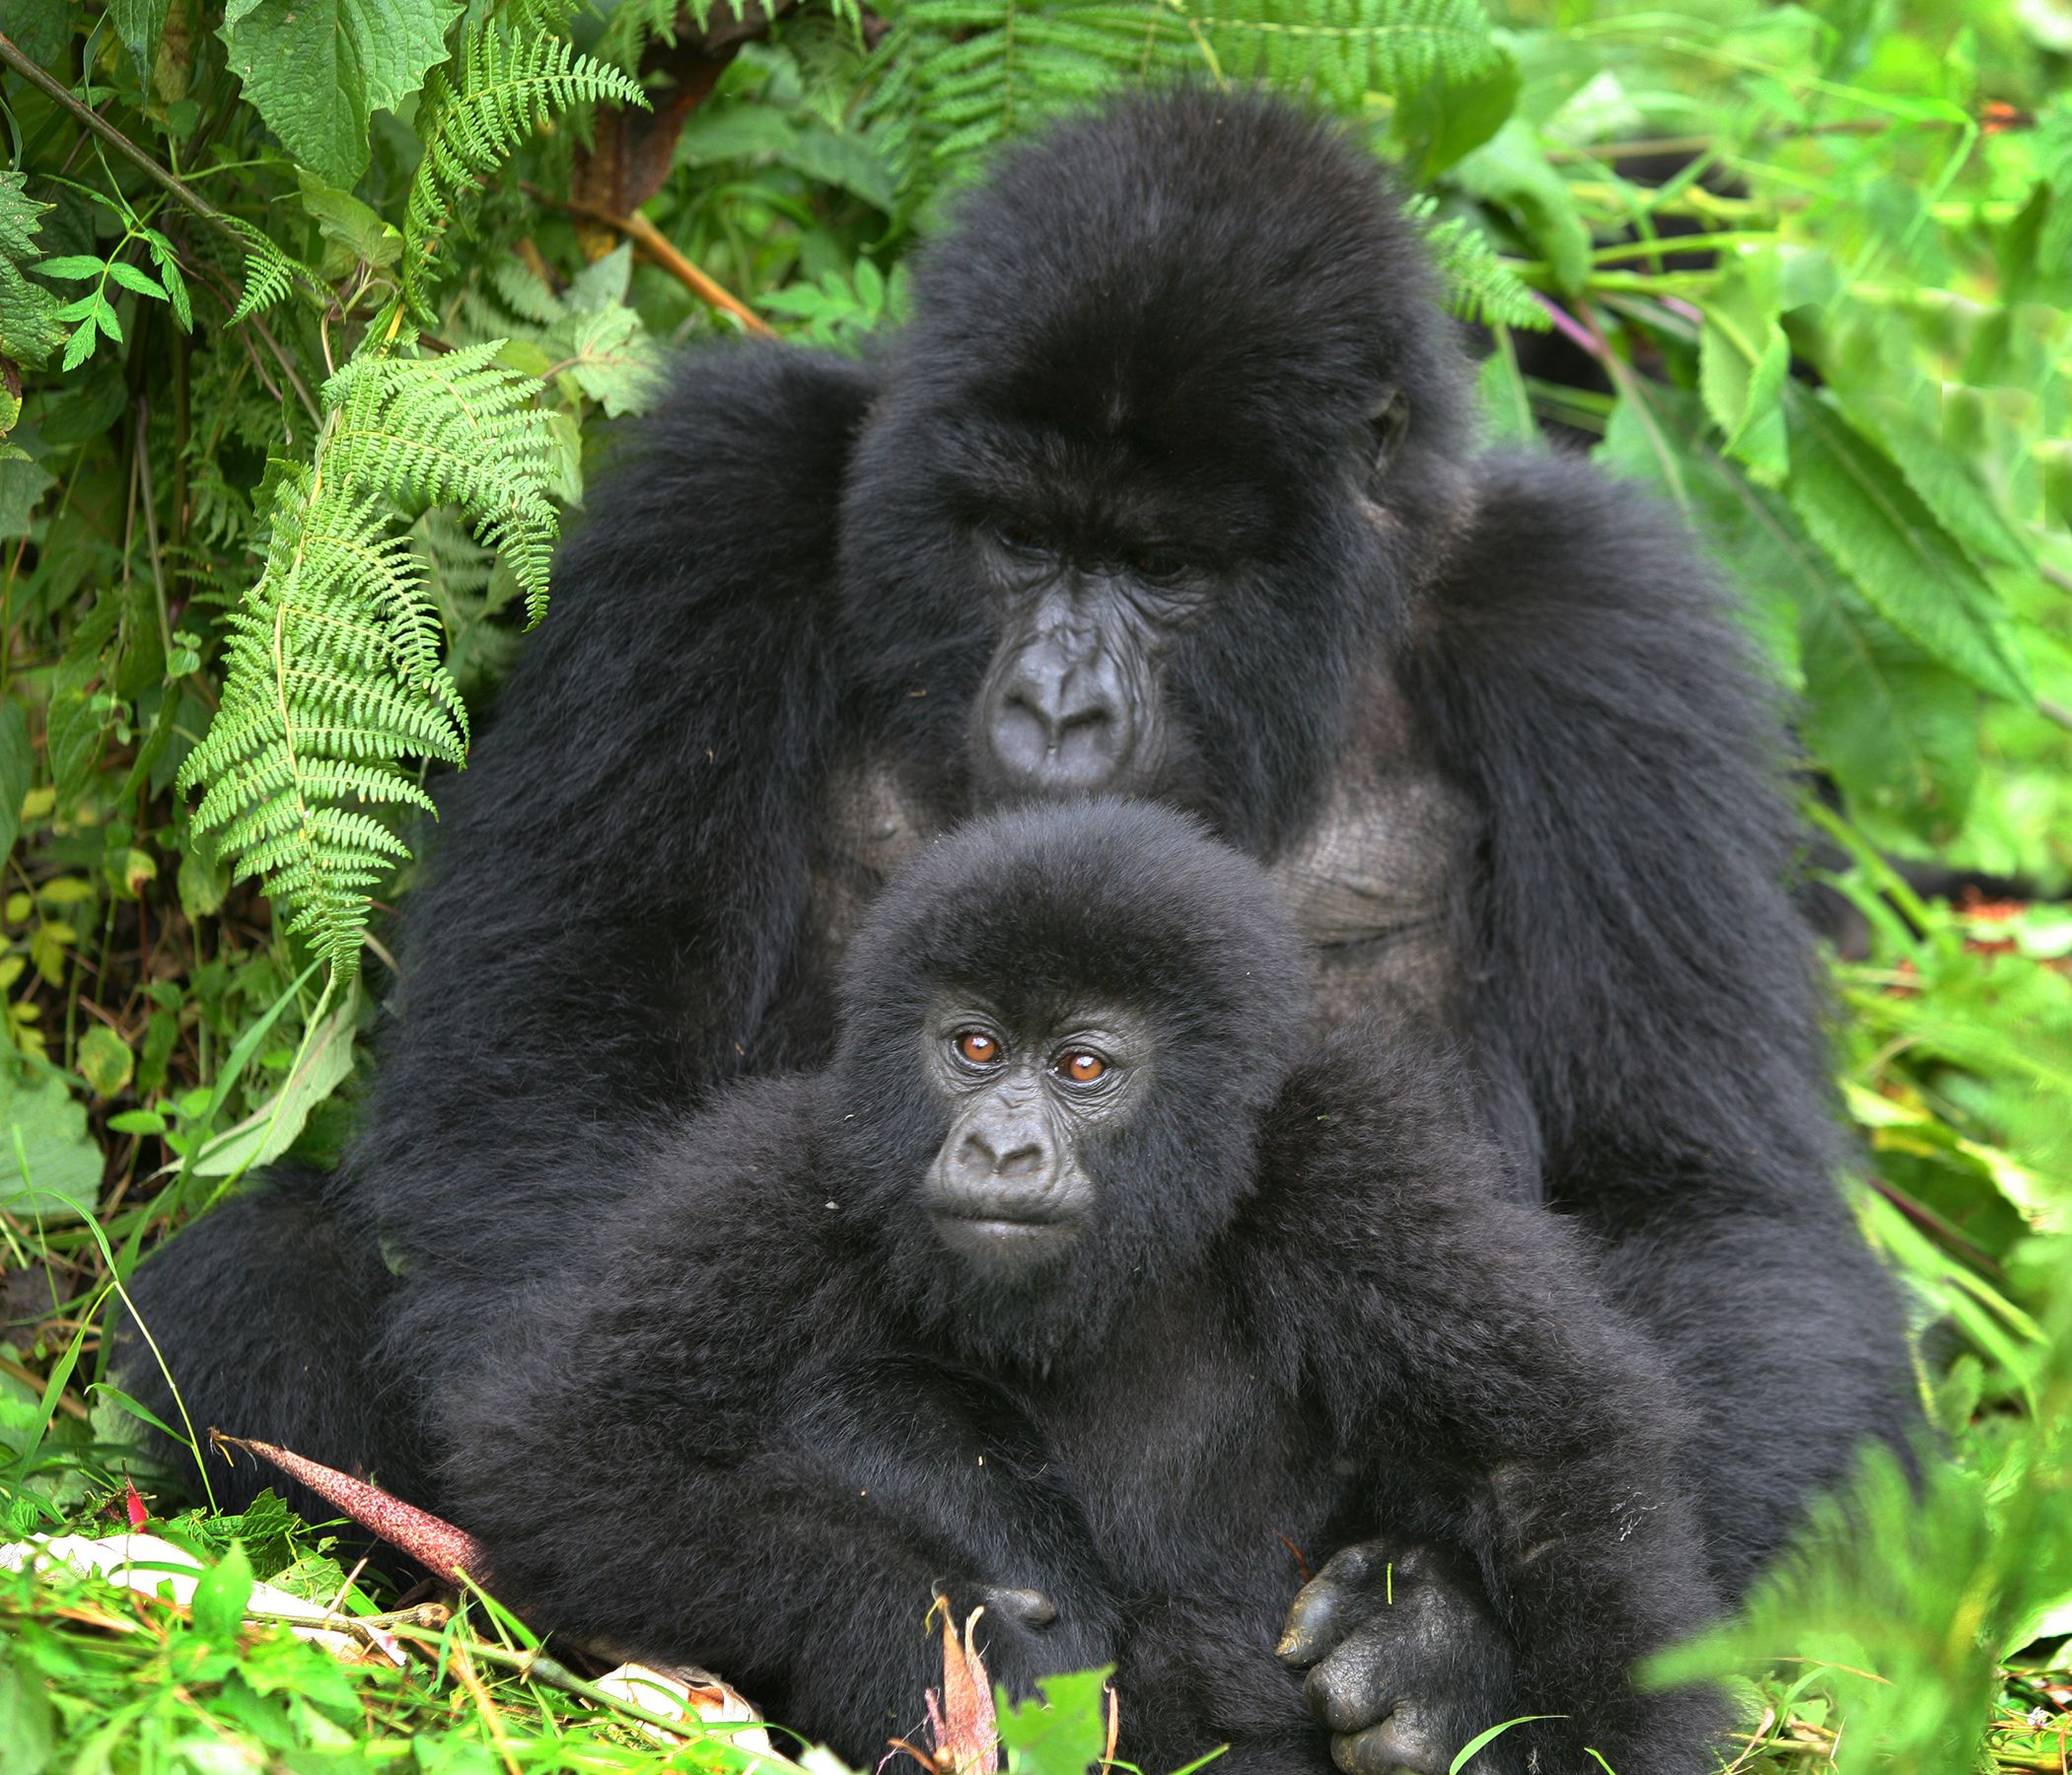 Tracking Rushaga Gorilla Bwindi Impenetrable National Park Uganda Tours gorillas and wildlife Safaris